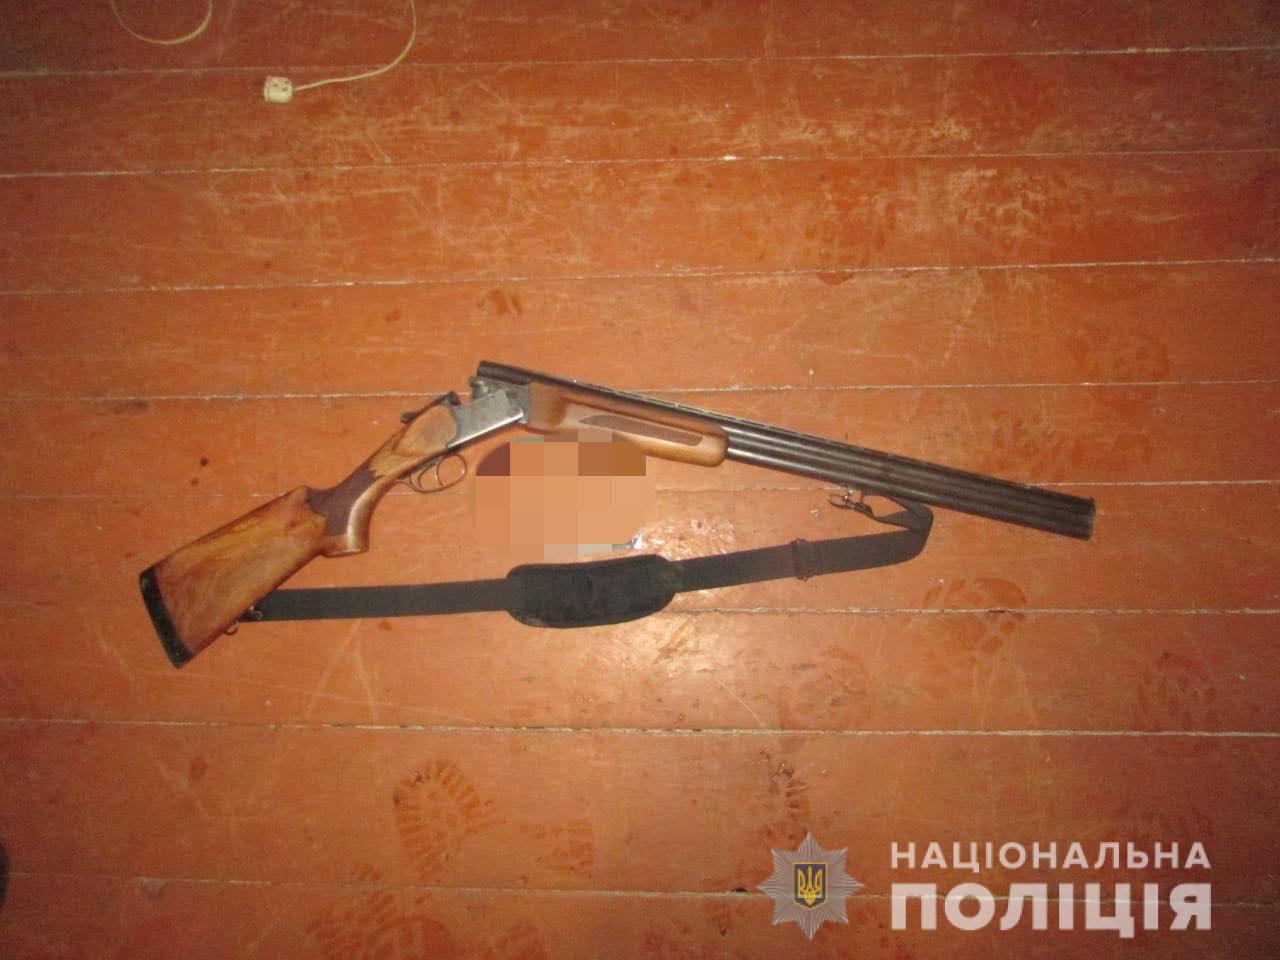 На Киевщине во время охоты случайно подстрелили мужчину